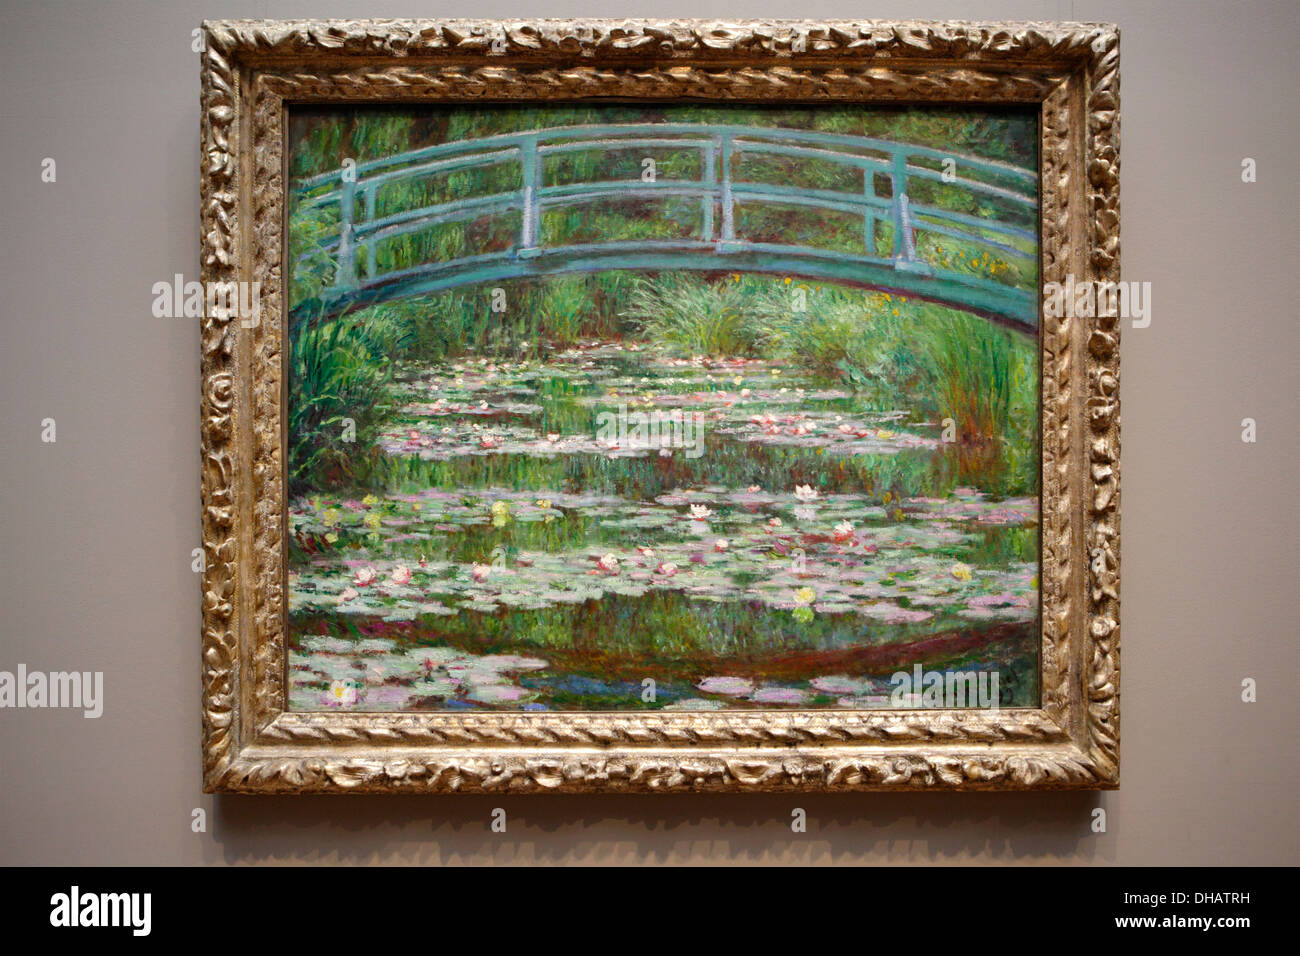 Die japanische Brücke von Monet, National Gallery of Art, Washington D.C., USA Stockfoto